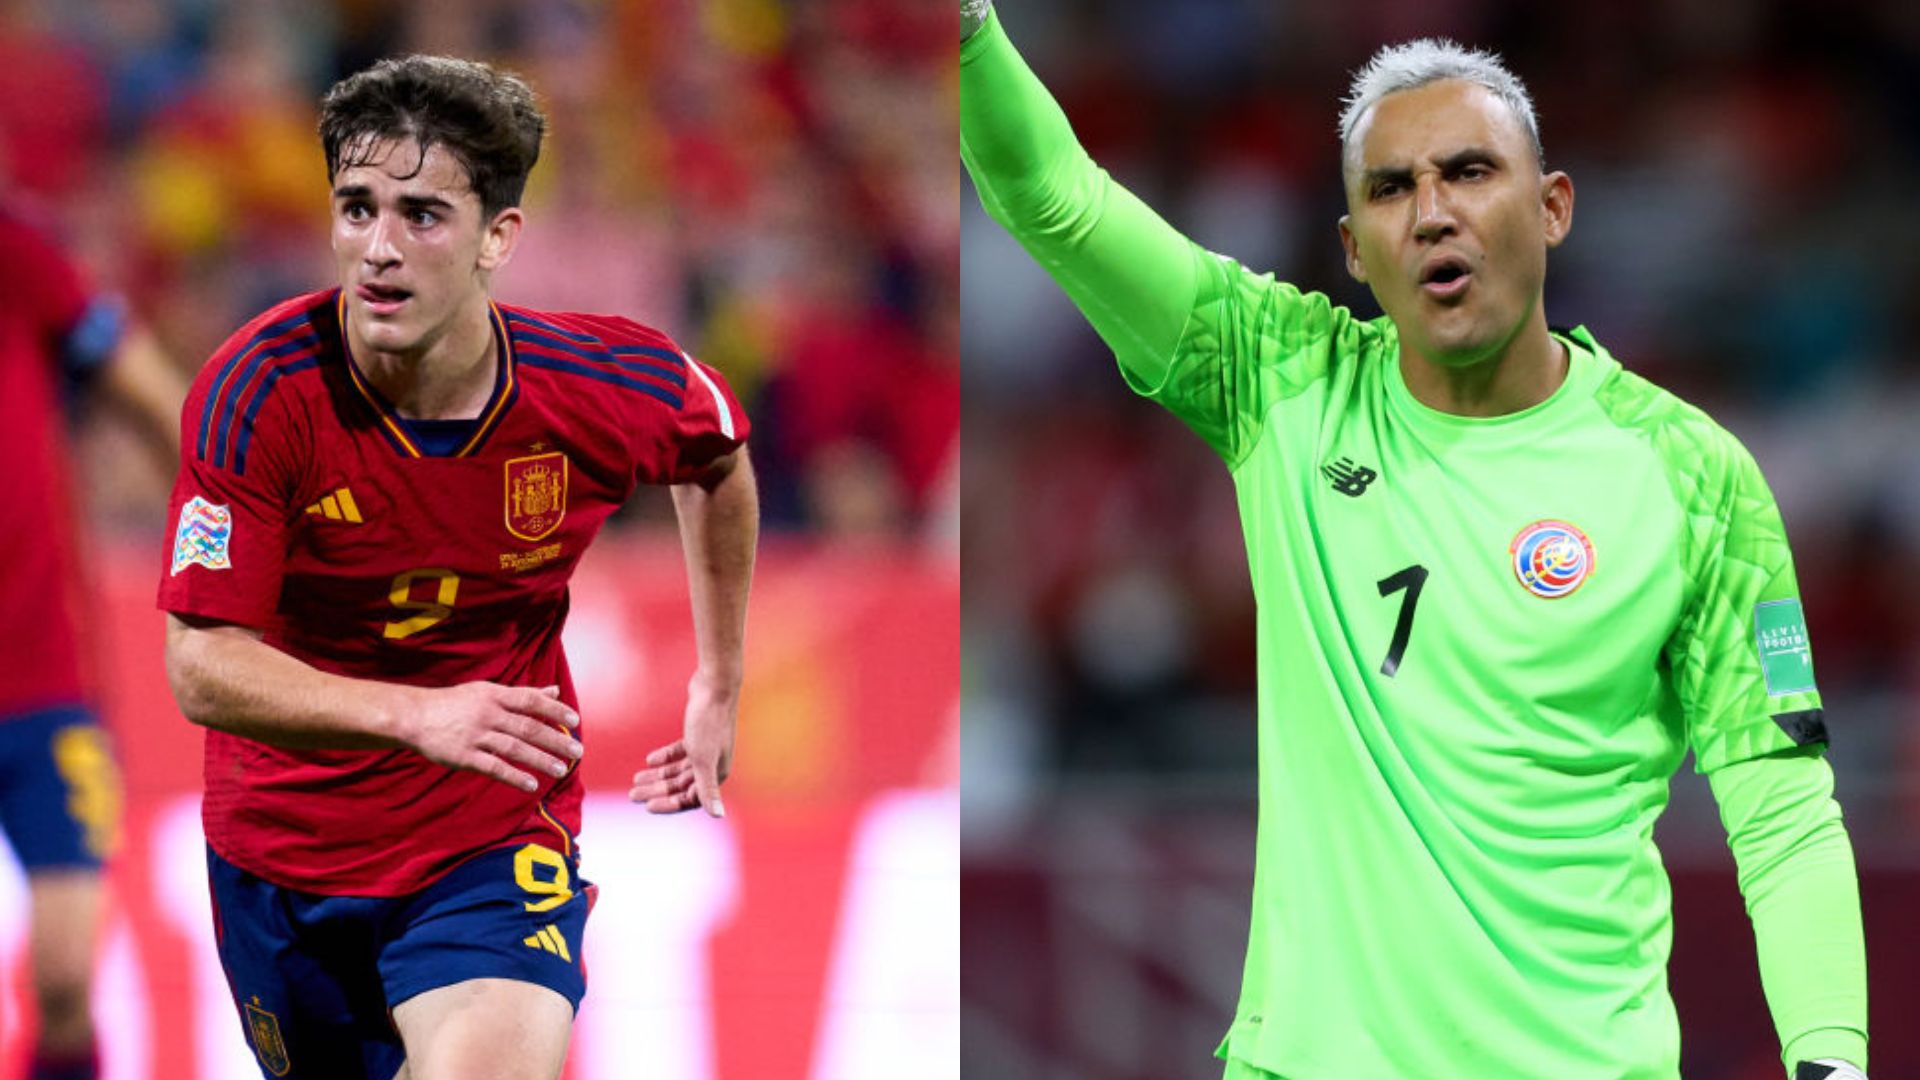 Espanha x Costa Rica: veja o 'Raio-x' do confronto na Copa do Mundo